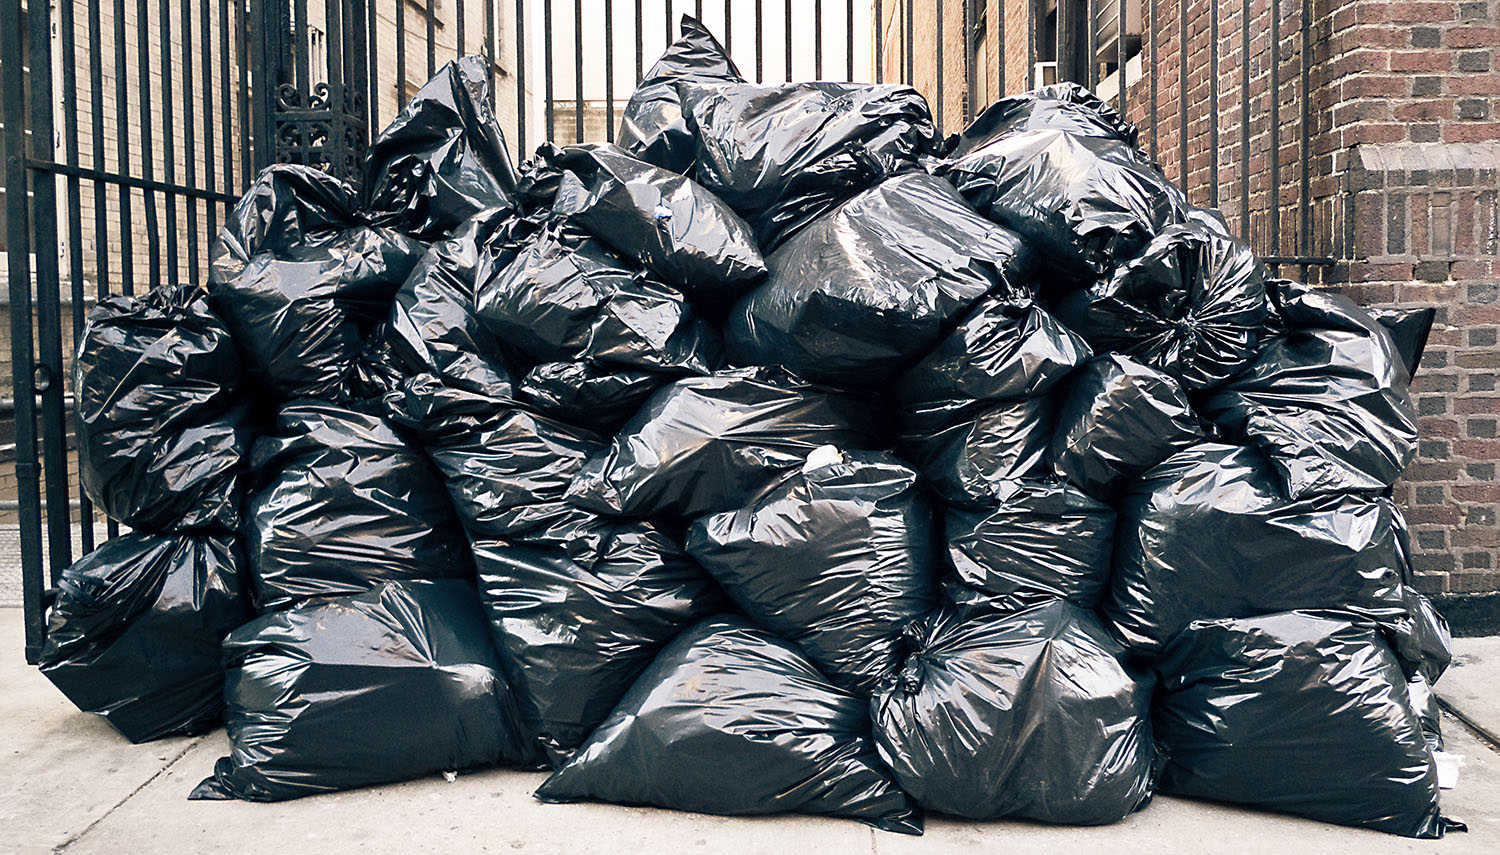 Pourquoi autant de poubelles en plein air à New York ? - French Morning US